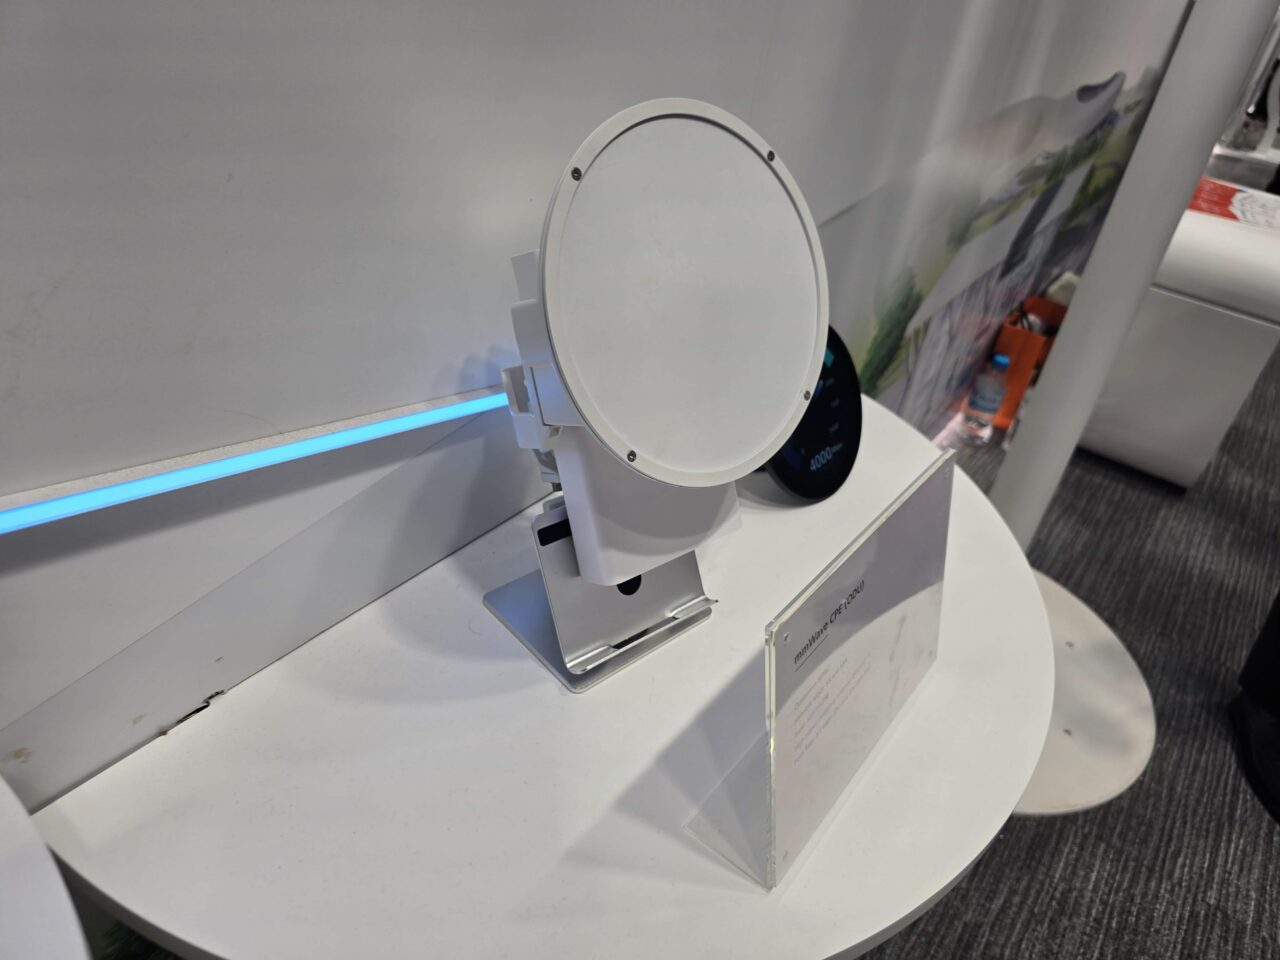 Biały, okrągły, modem 5G mmWave na stoisku Huawei 5.5G na targach MWC 2024. Biała jednostka z anteną mmWave w kształcie białego stożka na tle wystawowym, z niebieskim światłem LED i etykietą informacyjną.